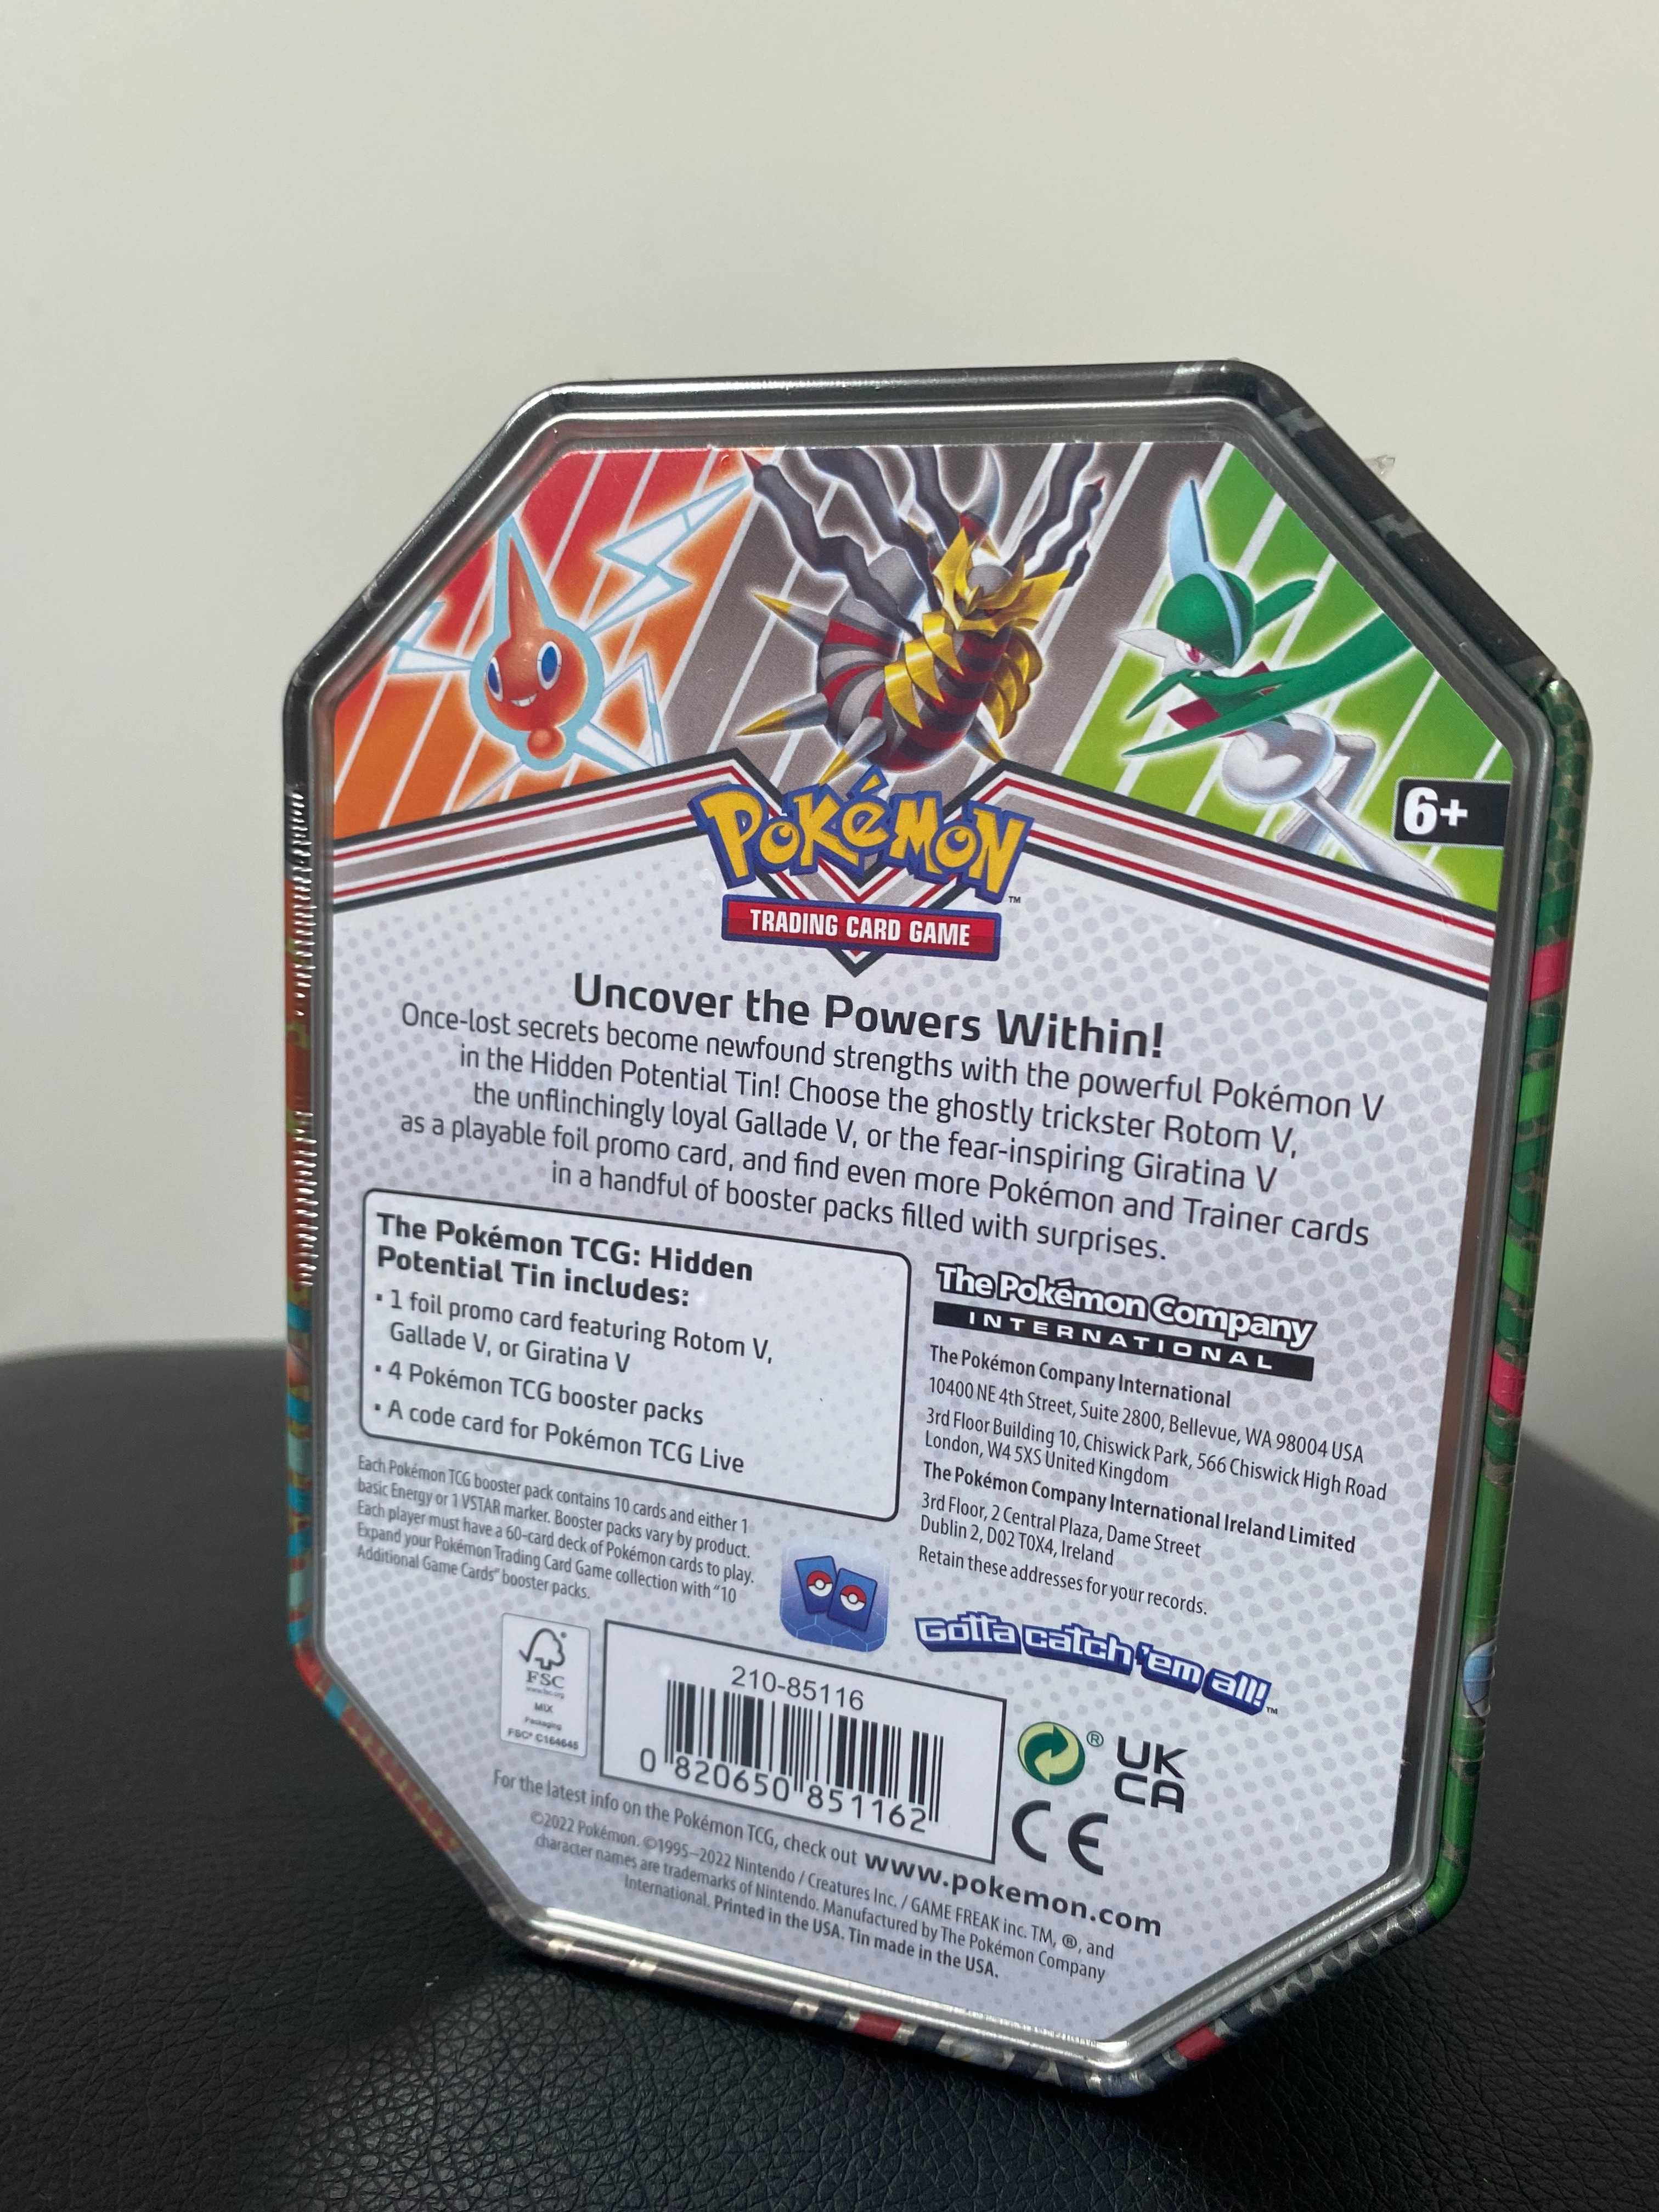 Pokémon TCG: Hidden Potential Tin – Gallade V, oryginał